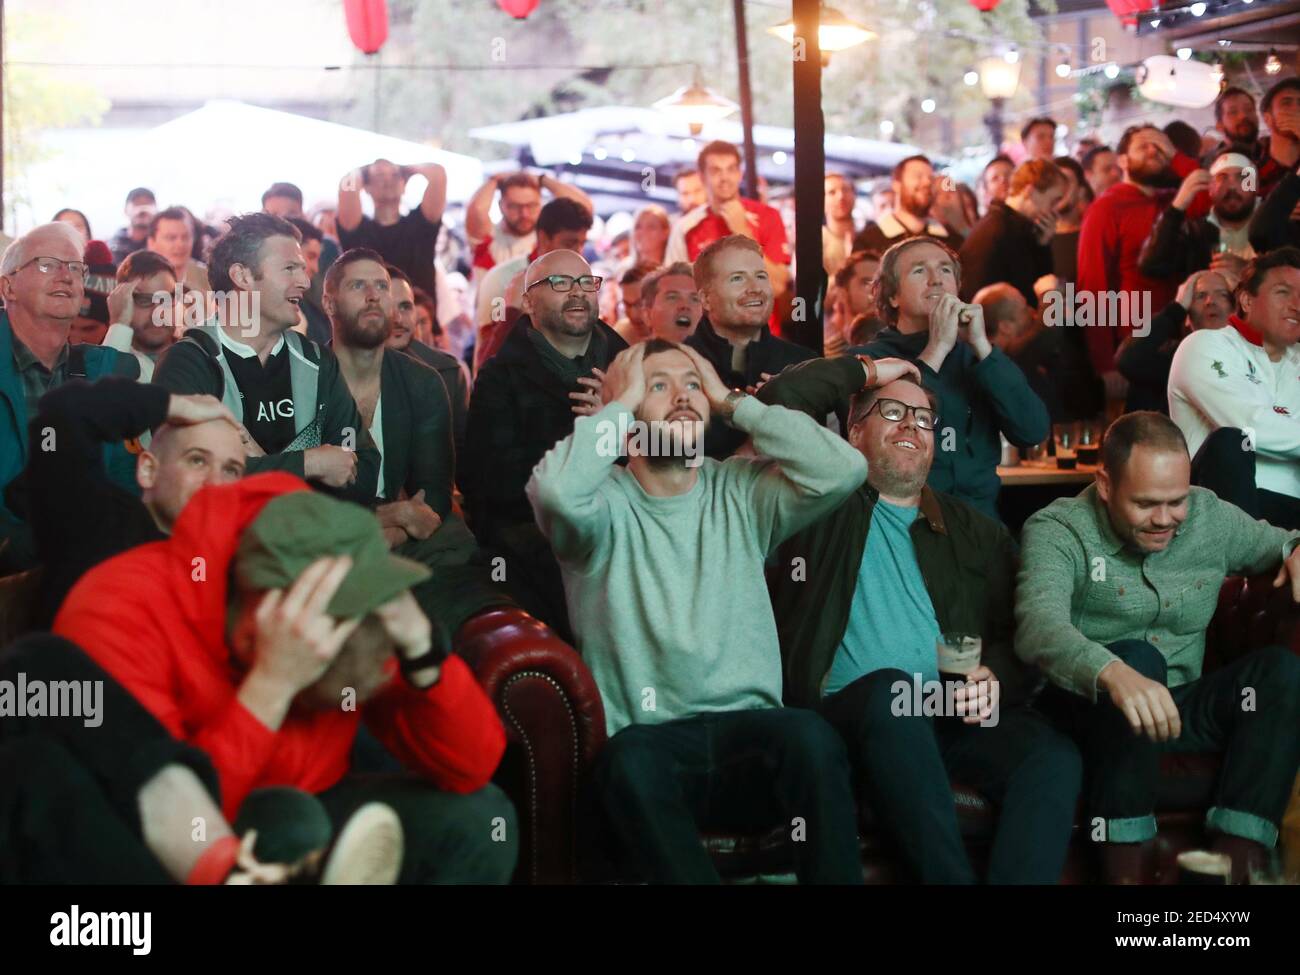 Rugby Union - Coppa del mondo di Rugby - Semifinale - Fans Watch England contro Nuova Zelanda - Londra, Gran Bretagna - 26 ottobre 2019. Le ventole reagiscono. REUTERS/Simon Dawson Foto Stock